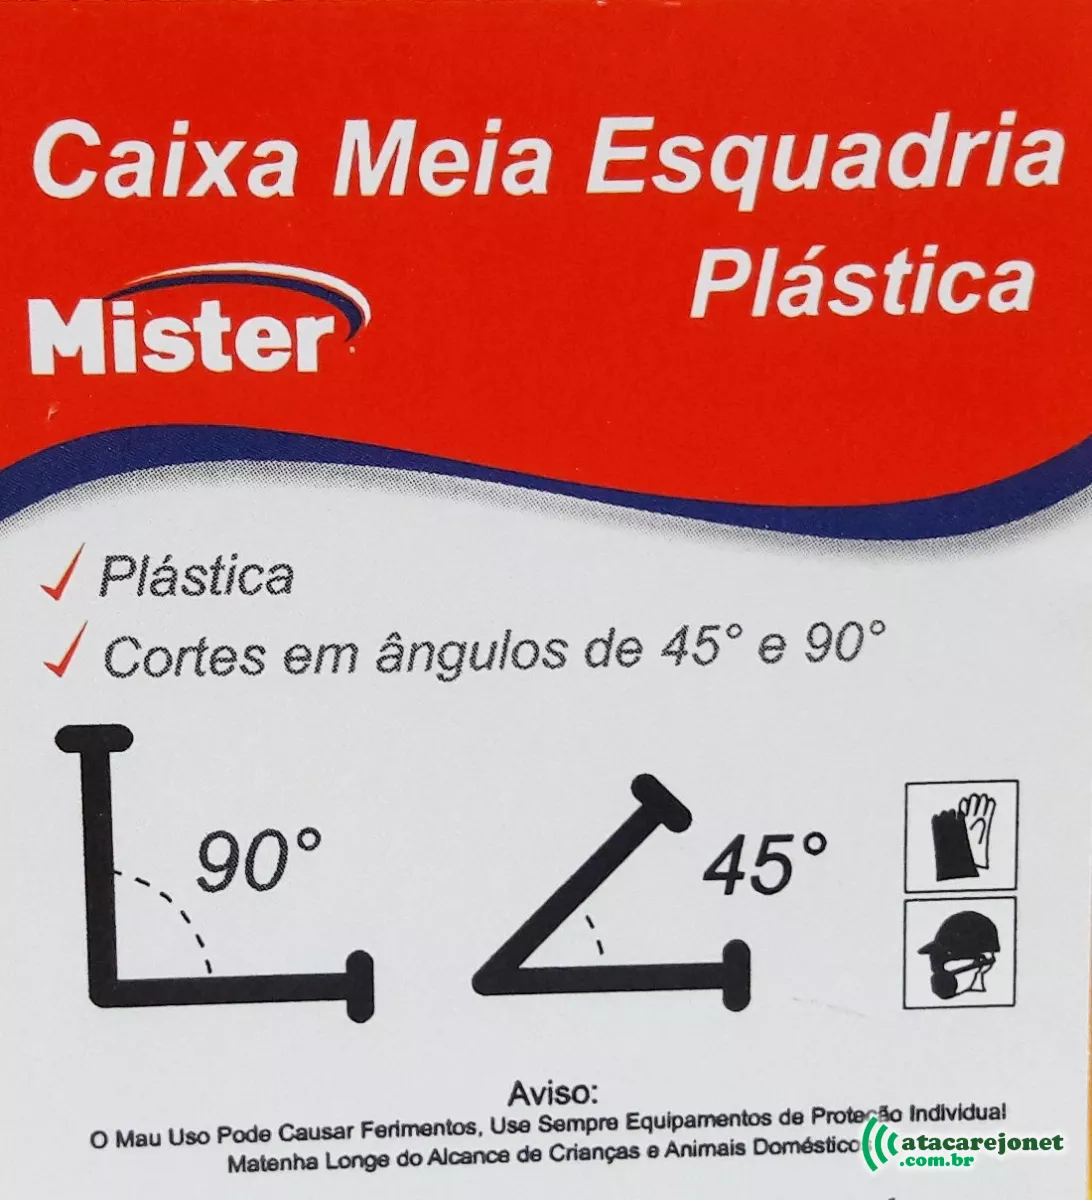 Caixa de Meia Esquadria Plástica - Mister